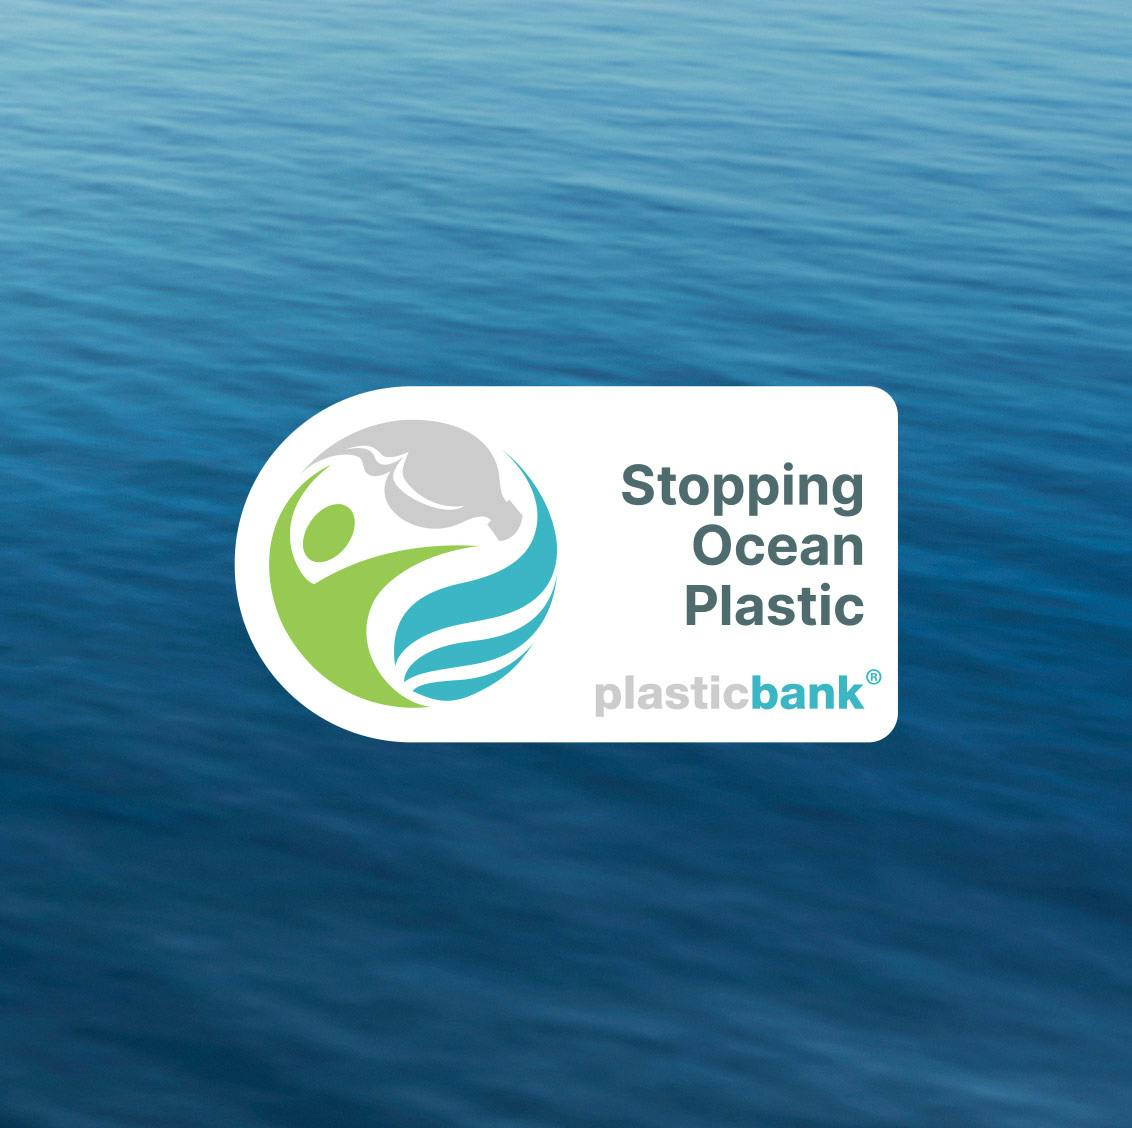 Stopping Ocean Plastic